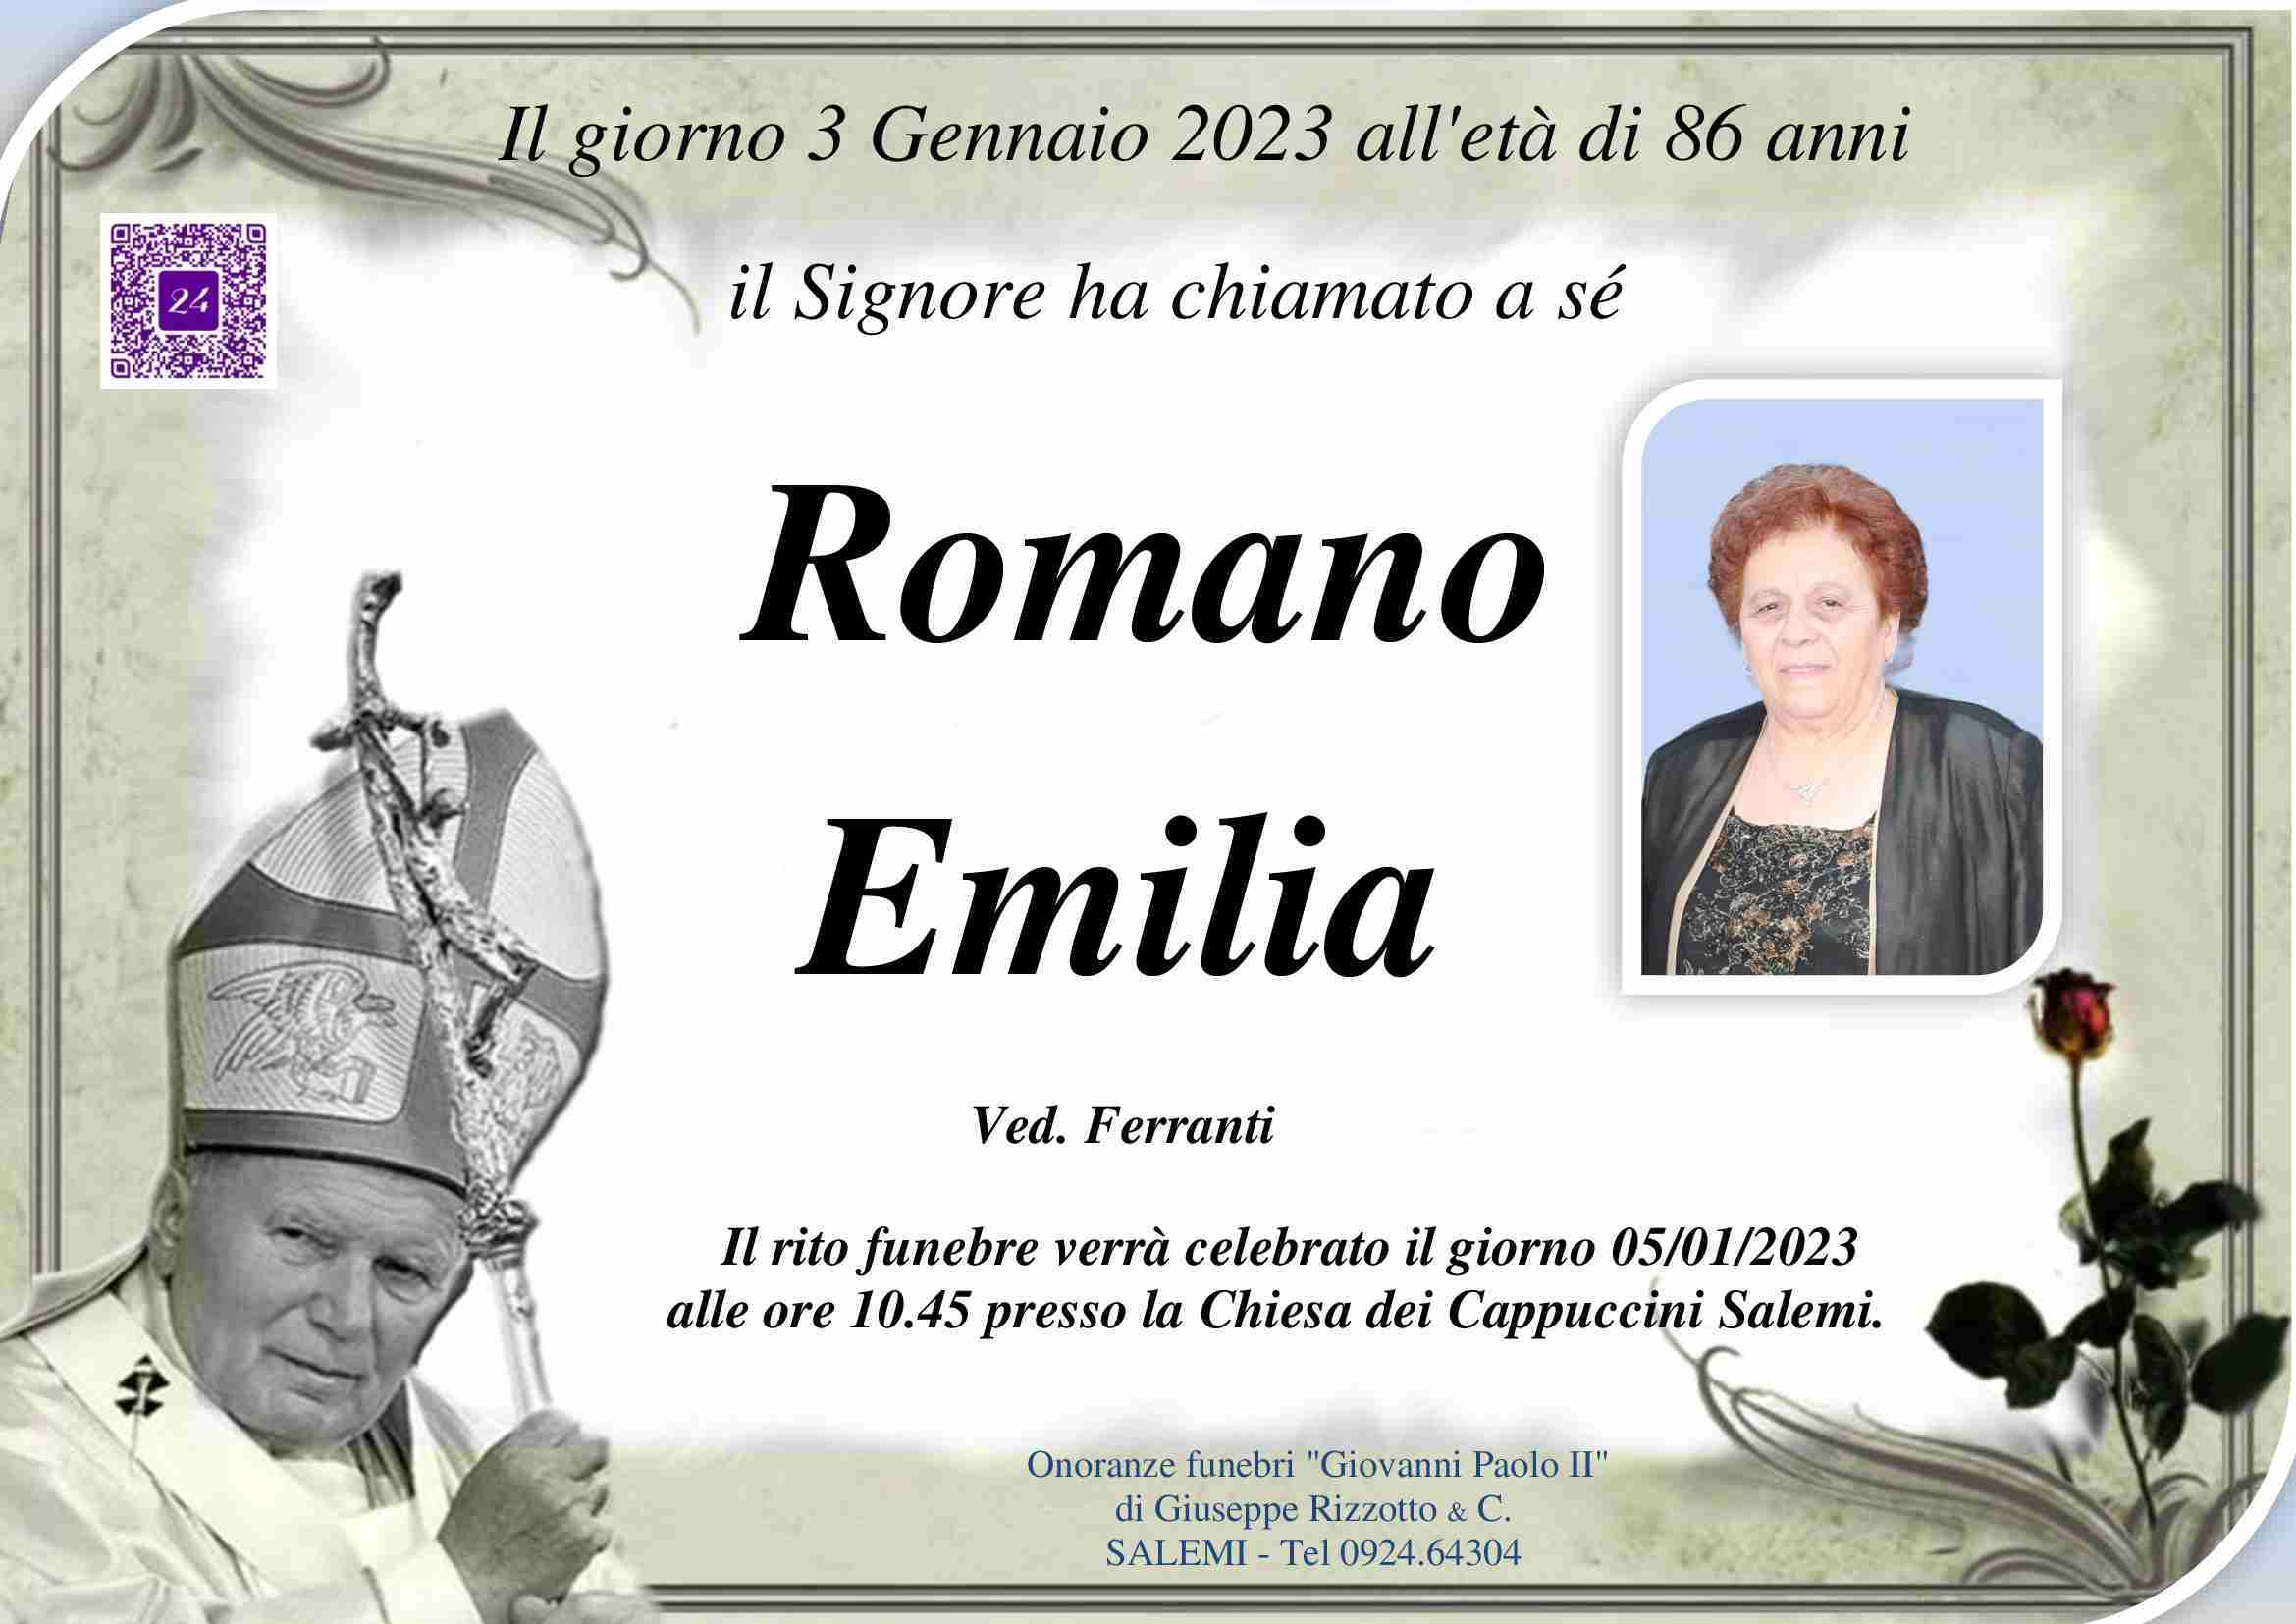 Emilia Romano